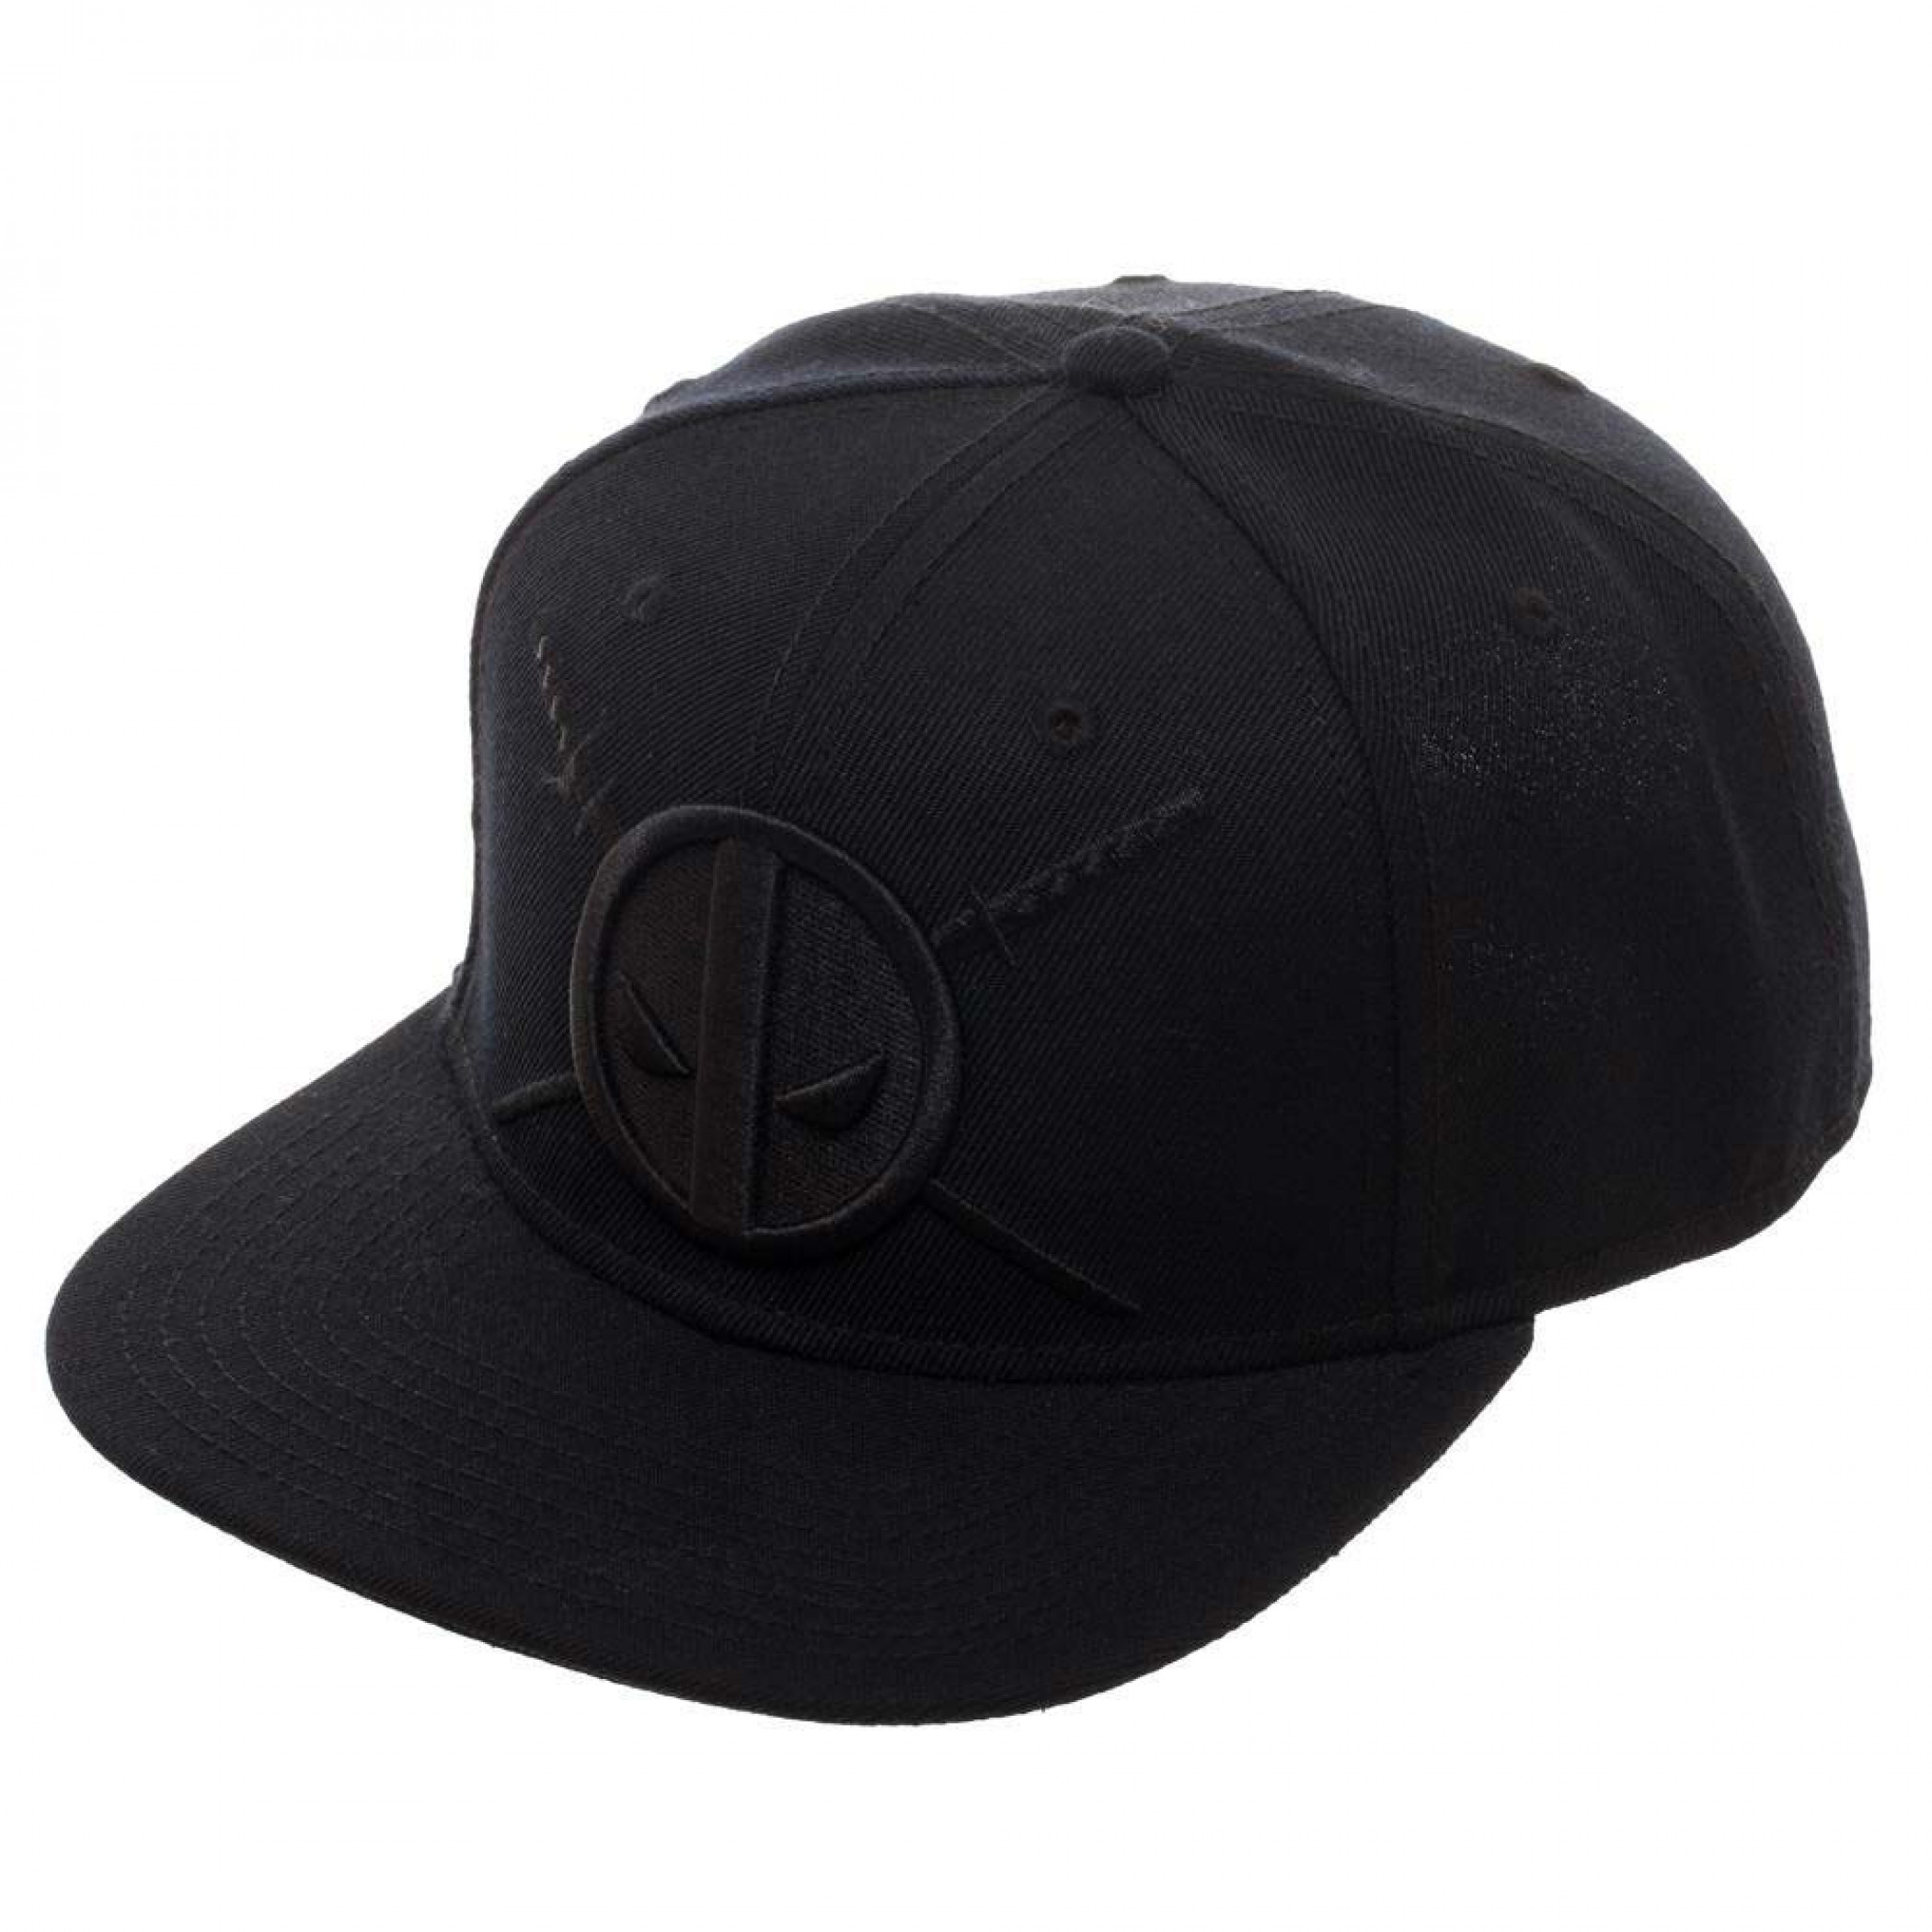 Deadpool Black on Black Hat